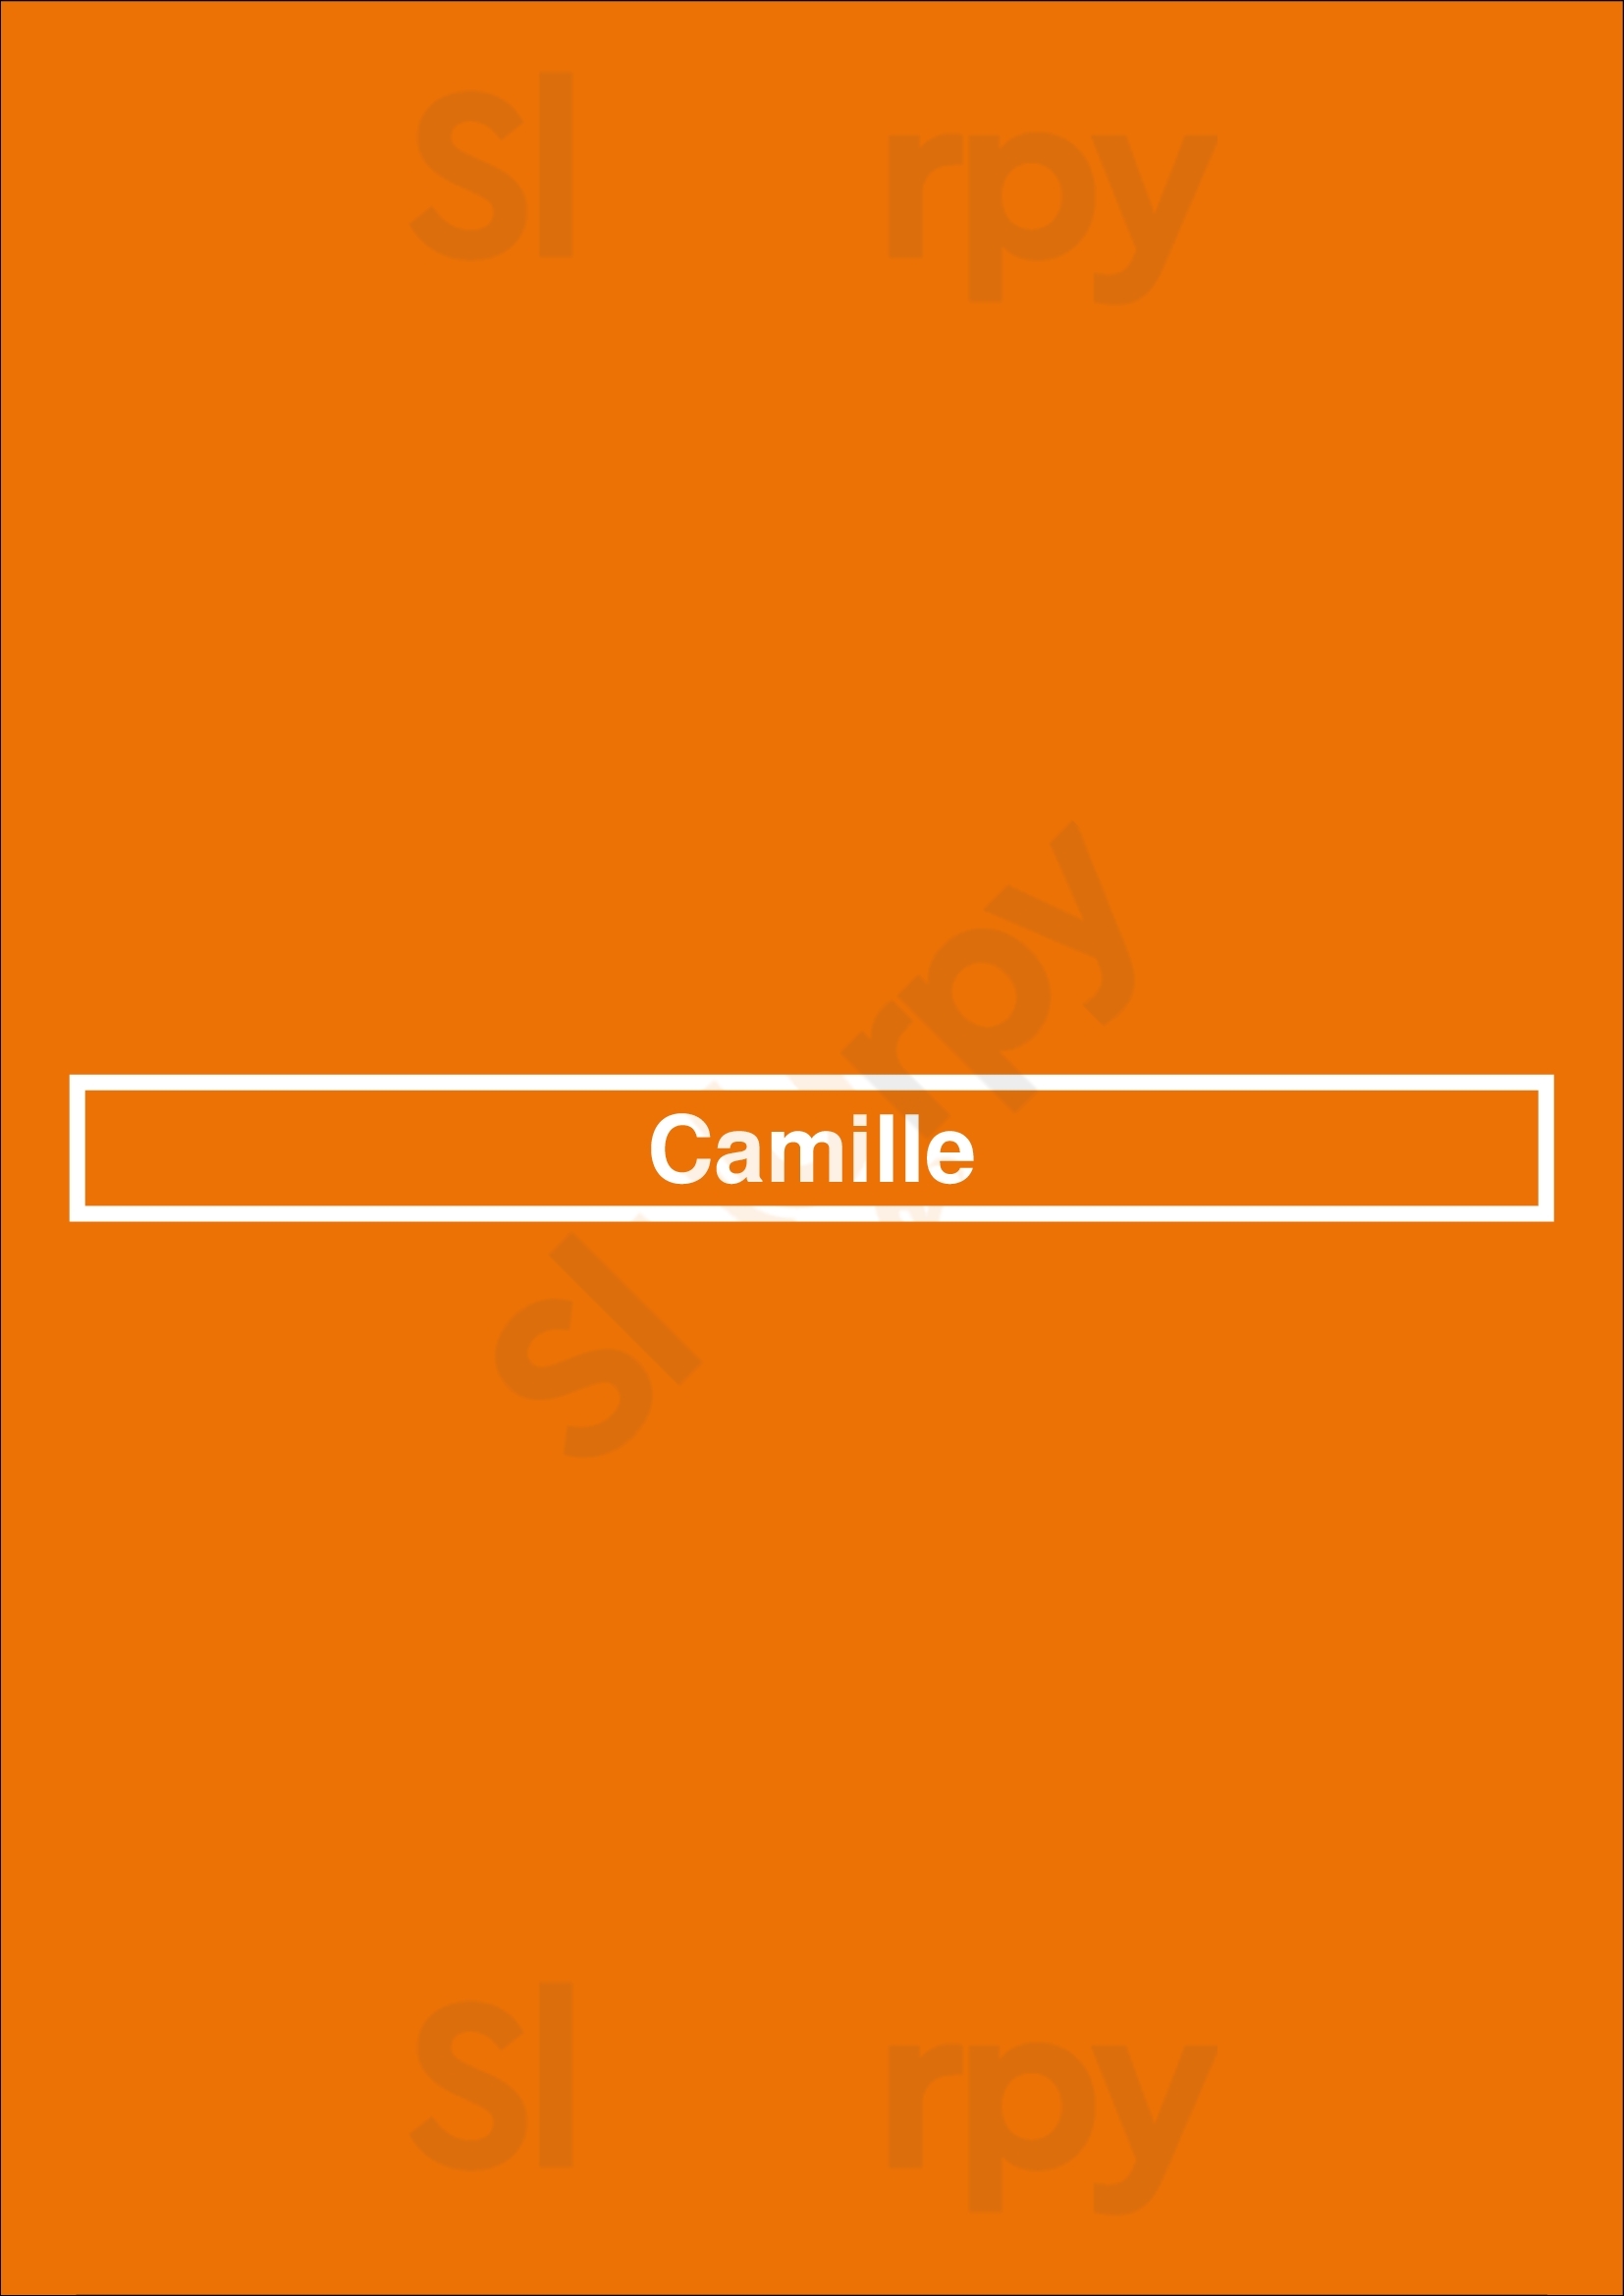 Camille Paris Menu - 1